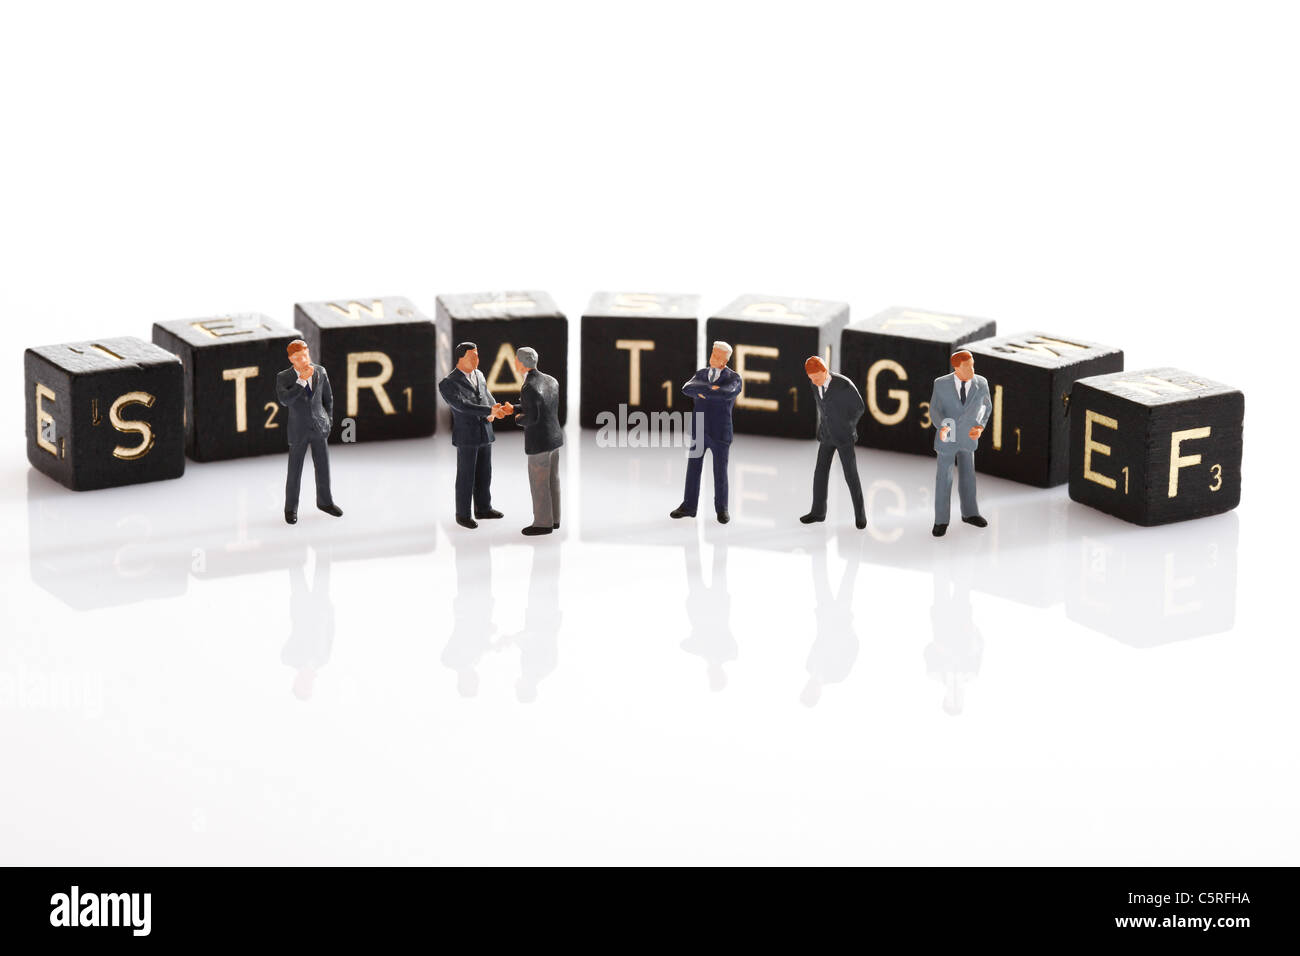 Scrabble azulejos formando la única estrategia de la palabra, en primer plano figuras de hombres de negocios Foto de stock